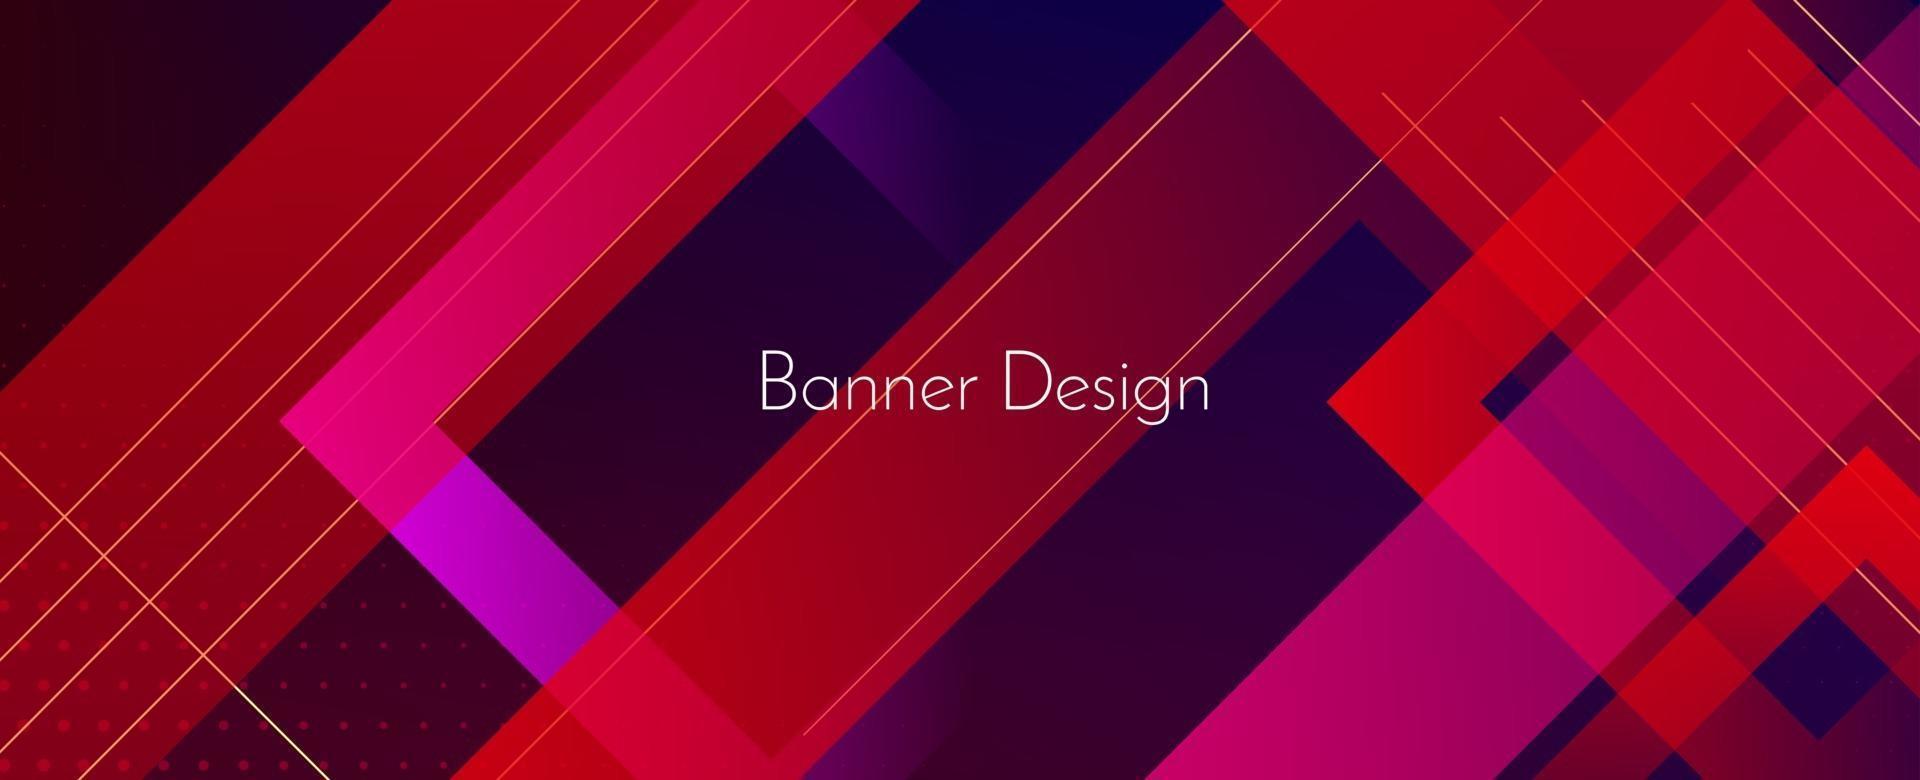 abstrakter dunkler geometrischer bunter moderner dekorativer Bannerdesignhintergrund vektor